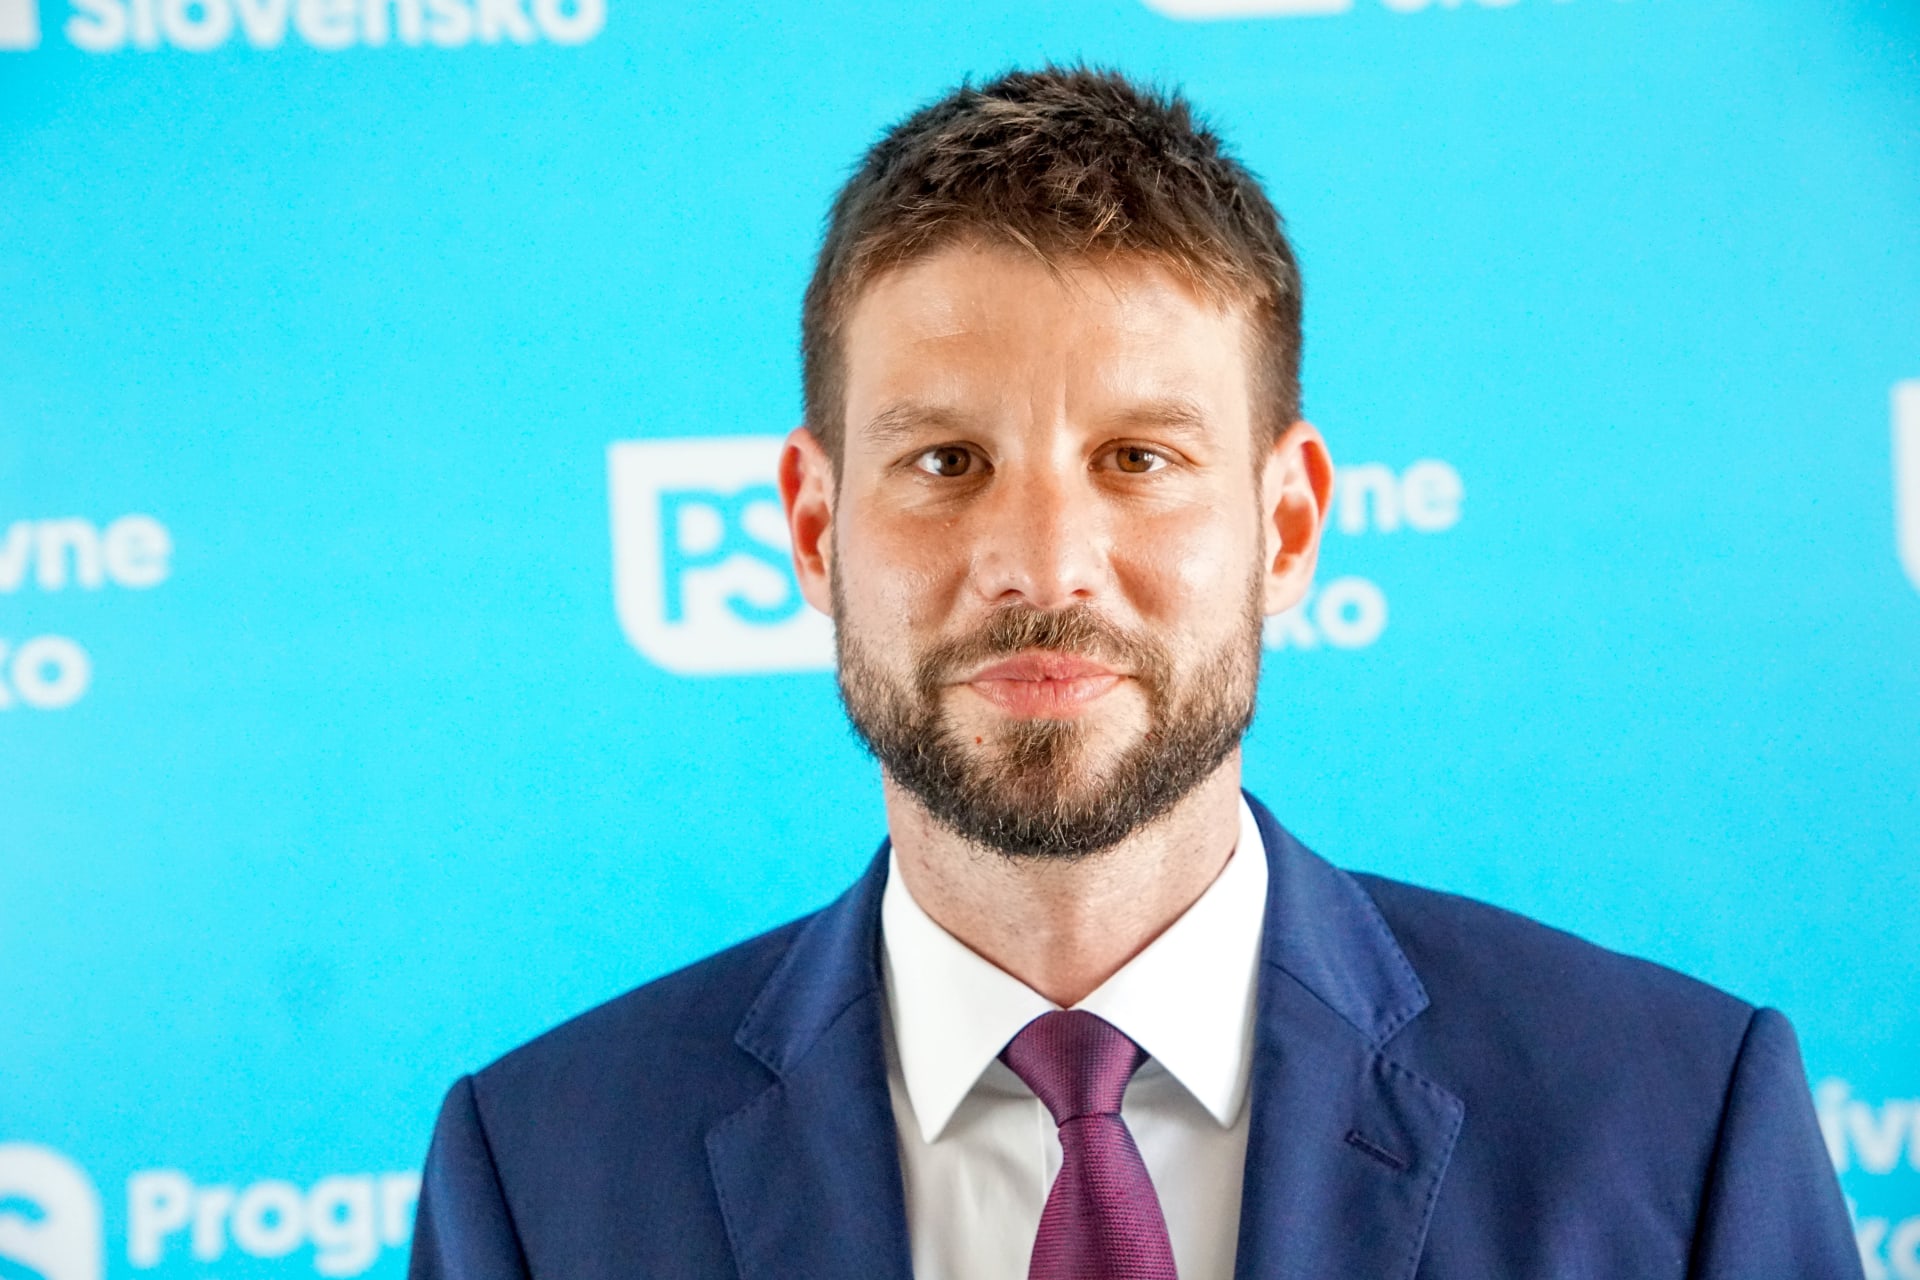 Šéf strany Progresivní Slovensko a místopředseda Evropského parlamentu Michal Šimečka